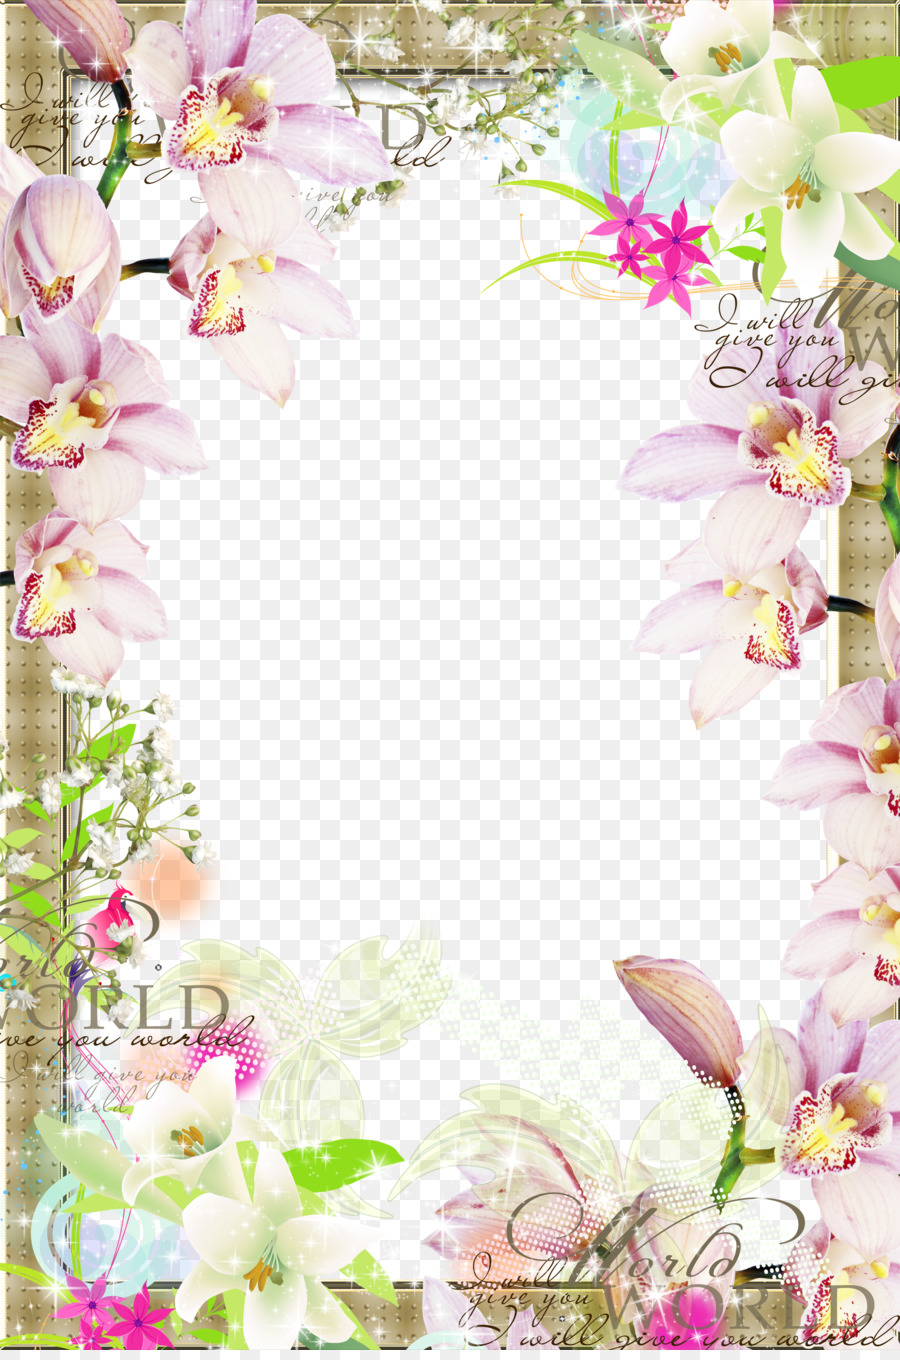 Picture frame Clip art - Spring Flower Border png download - 2079*3119 - Free Transparent Picture Frame png Download.